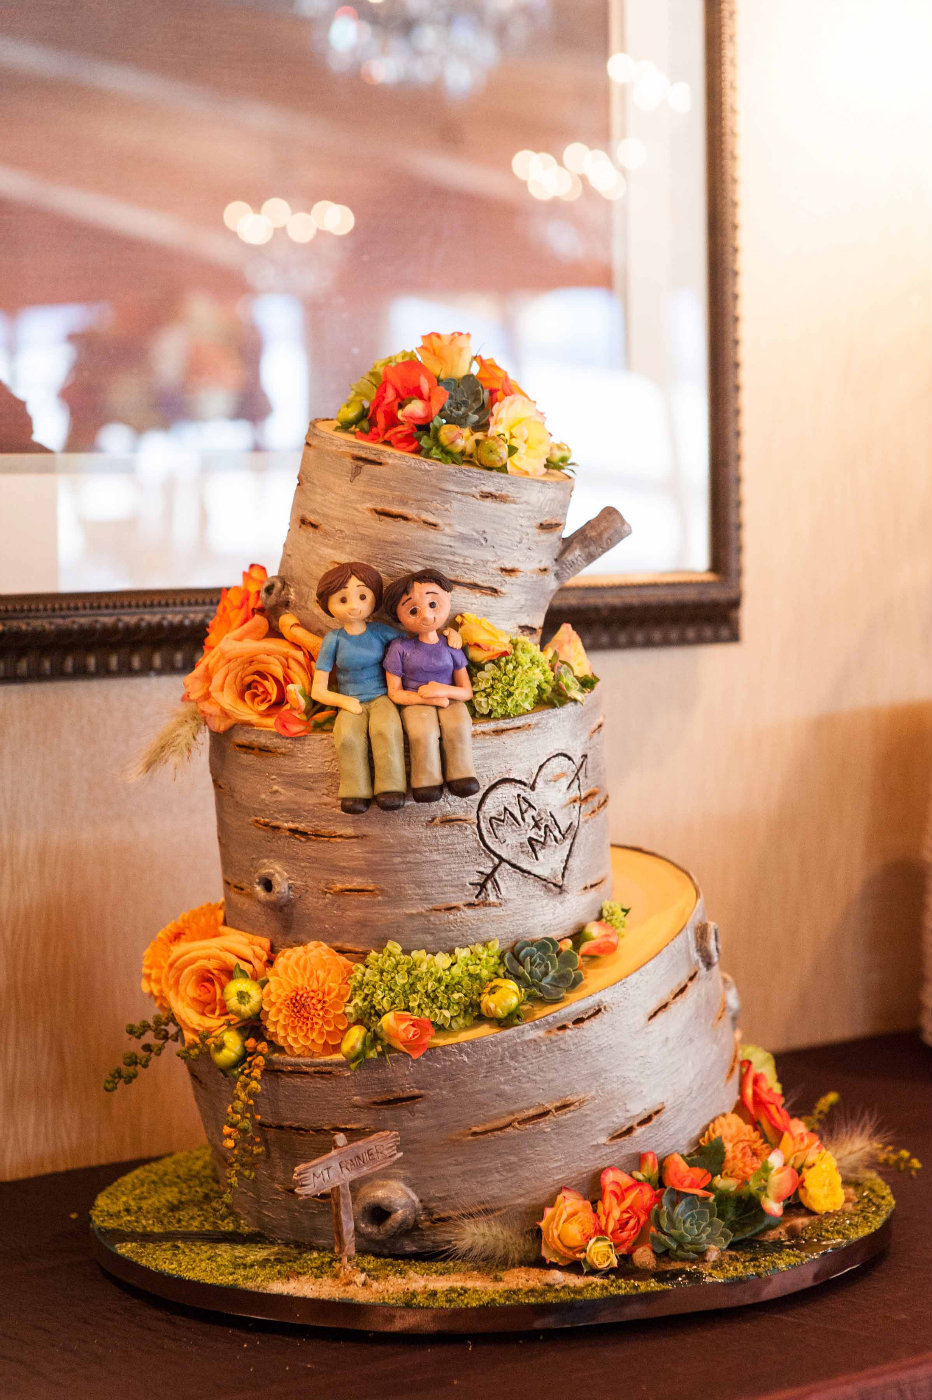 wedding cake with hiking theme, barked style, orange flowers